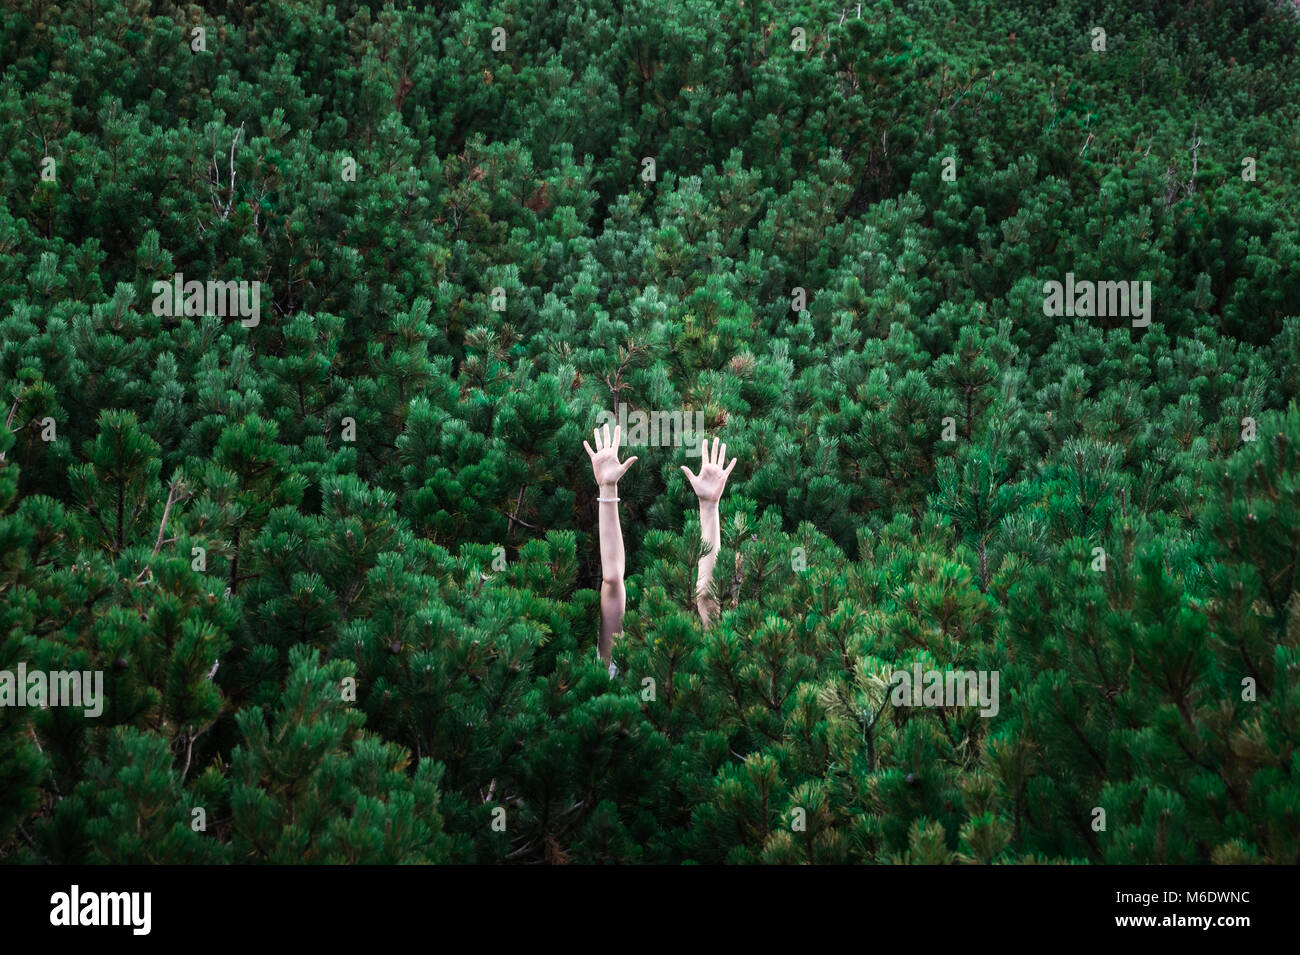 Immagine astratta delle persone mani sorto visibile tra il verde ricca di alberi di pelliccia che compongono lo sfondo completo Foto Stock